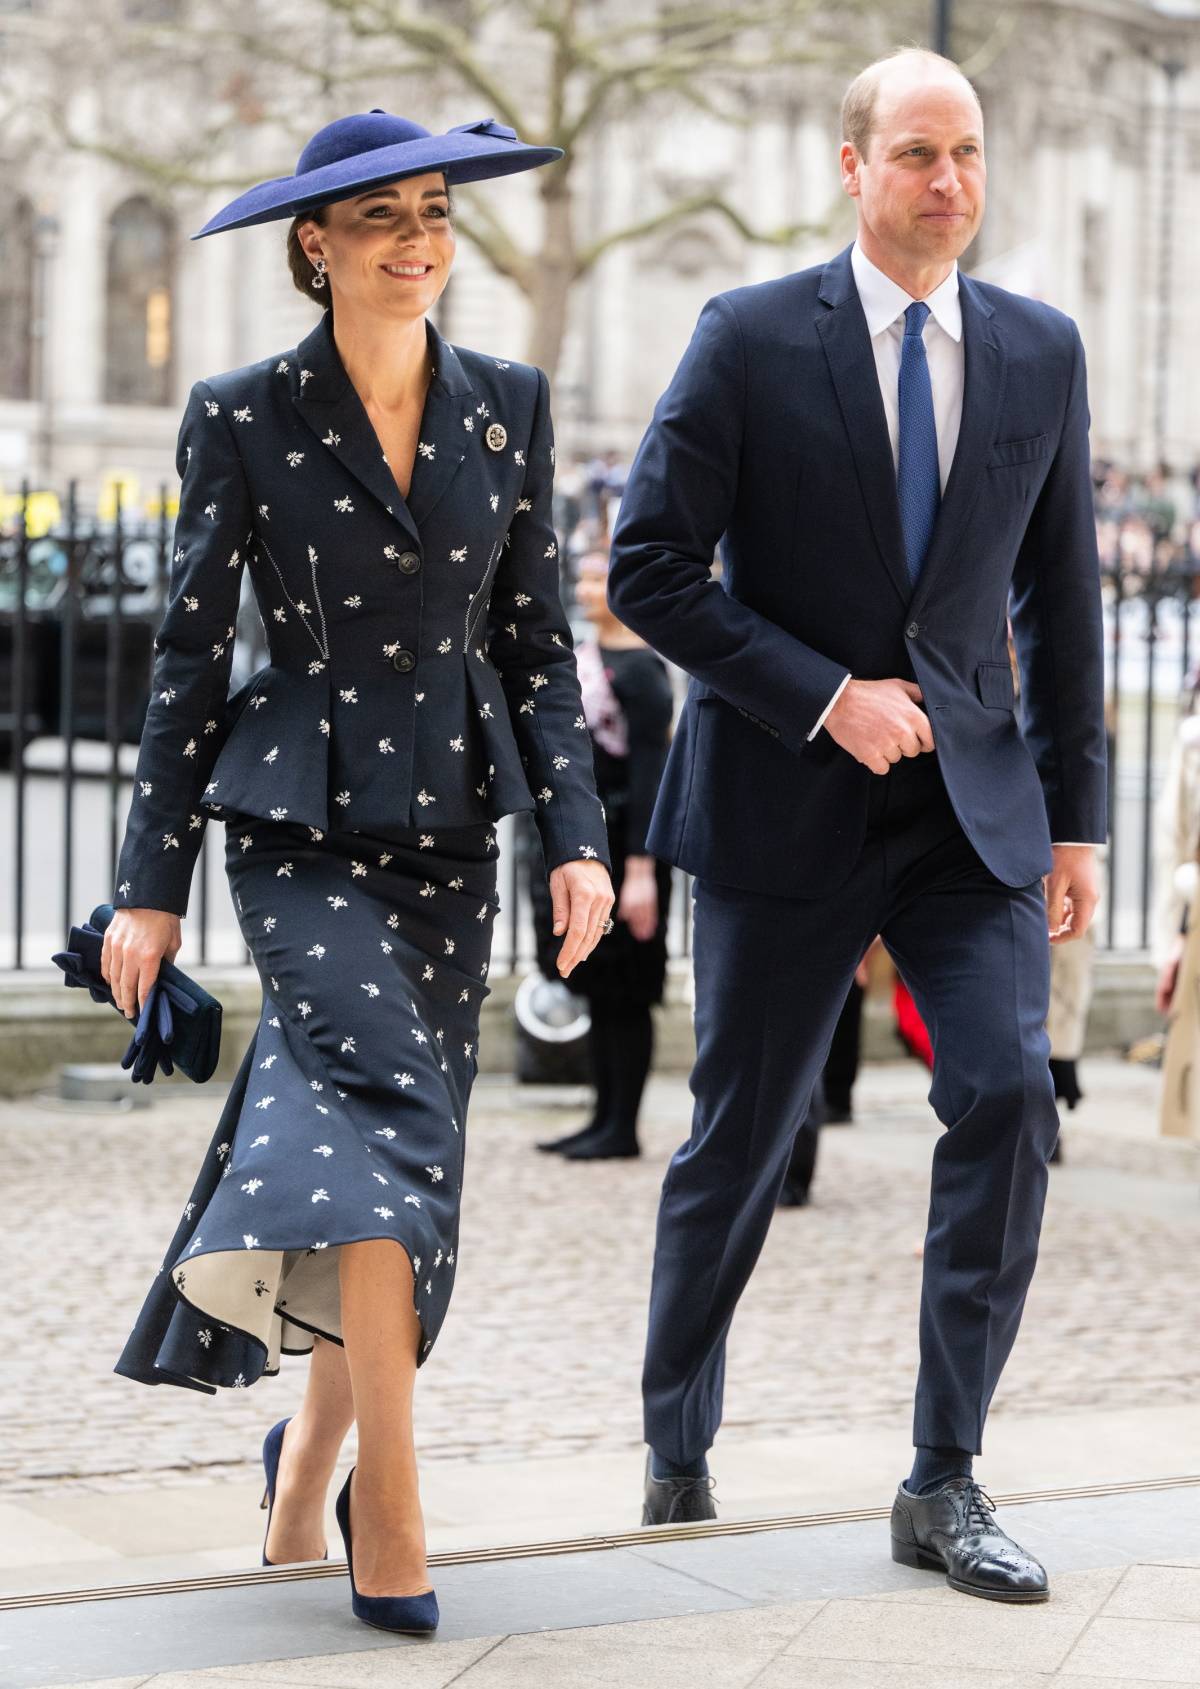 Na nabożeństwo z okazji Dnia Wspólnoty Narodów księżna Kate wybrała elegancki komplet z baskinką z kwiatowym wzorem od Erdem i biżuterię księżnej Diany